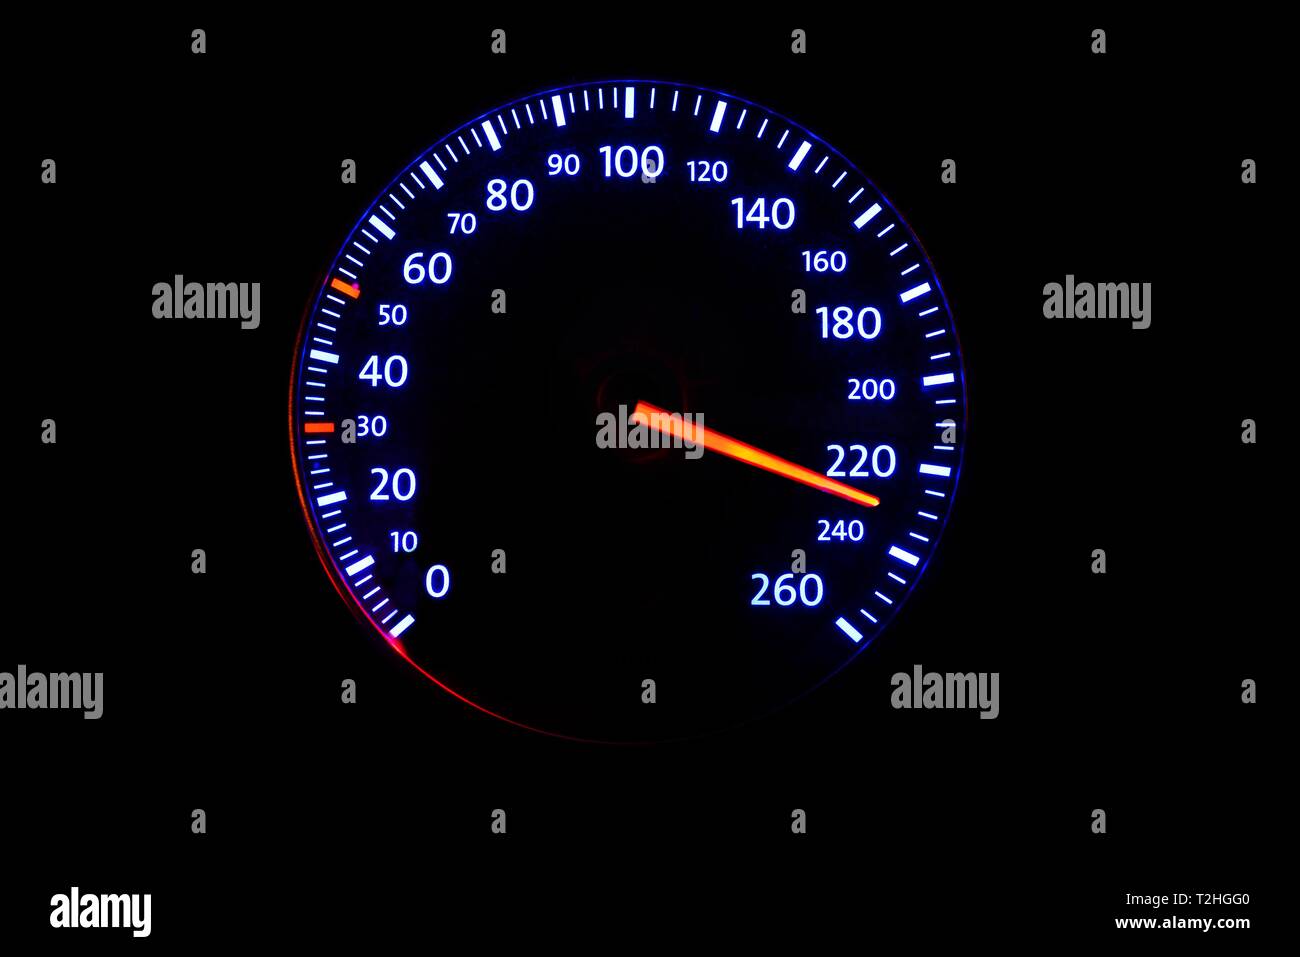 Il tachimetro con display di velocità 220 km/h, immagine simbolo di pericolo a causa di un eccesso di velocità, la velocità di guida è troppo elevata, Germania Foto Stock